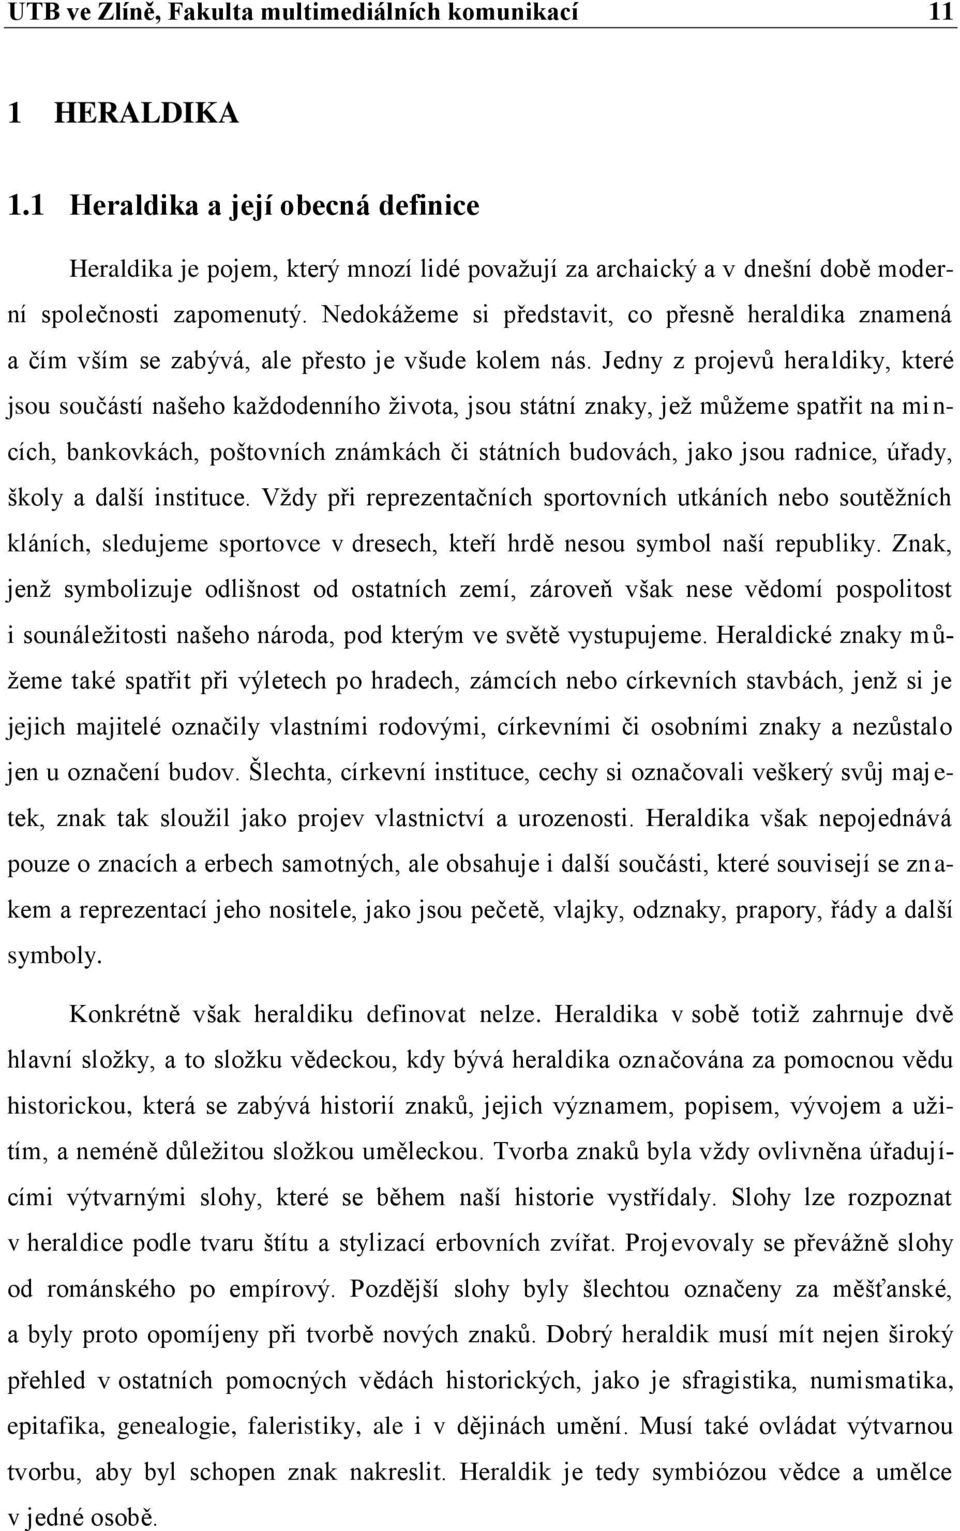 Heraldika v grafickém designu. František Řezníček - PDF Free Download